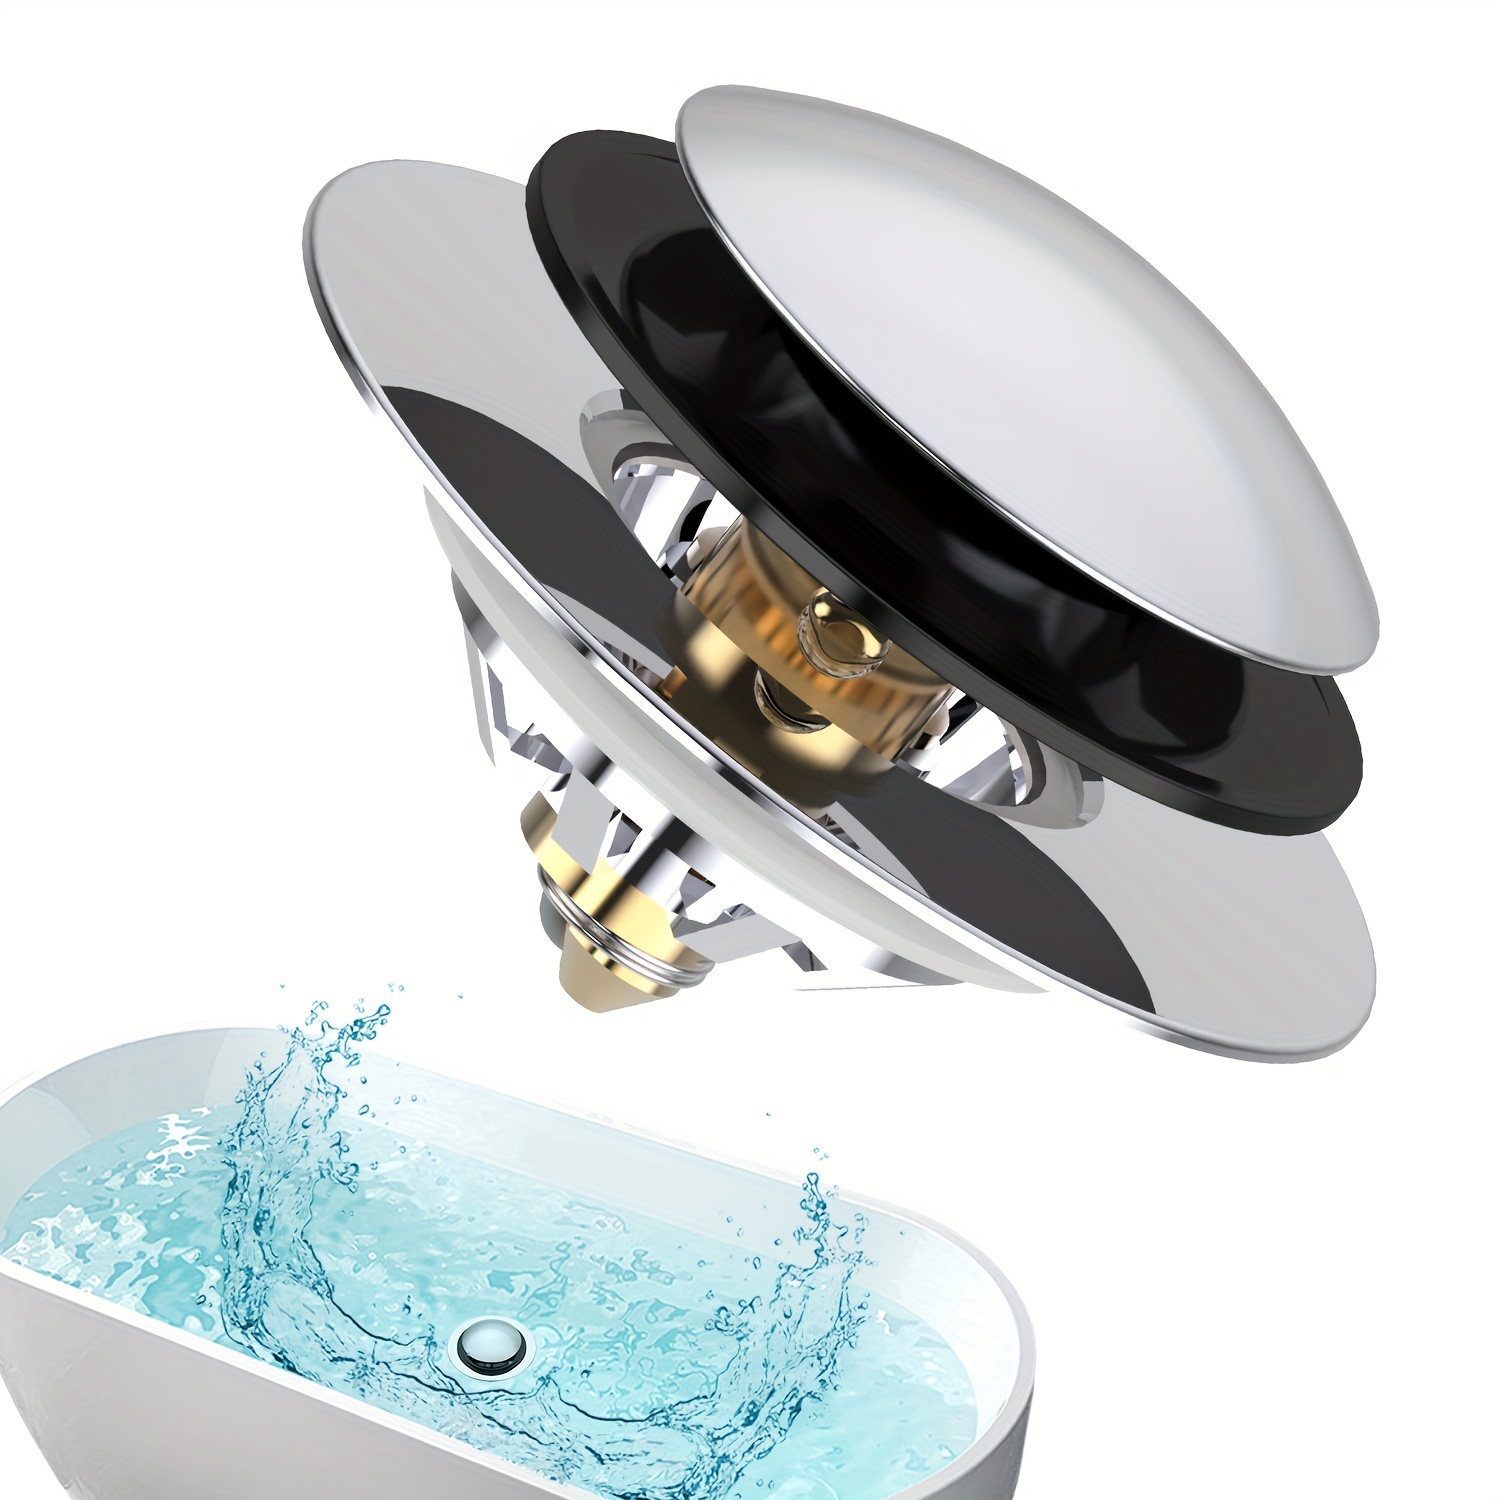 MINISMUS Tapon para Lavabo Baño (40 mm, Cromado) - Tapón Lavabo Universal,  Tapones para Lavabos, Tapones de Fregadero para lavabos de baño, fregaderos  de cocina y bidé - Tapones Lavabo Baño 